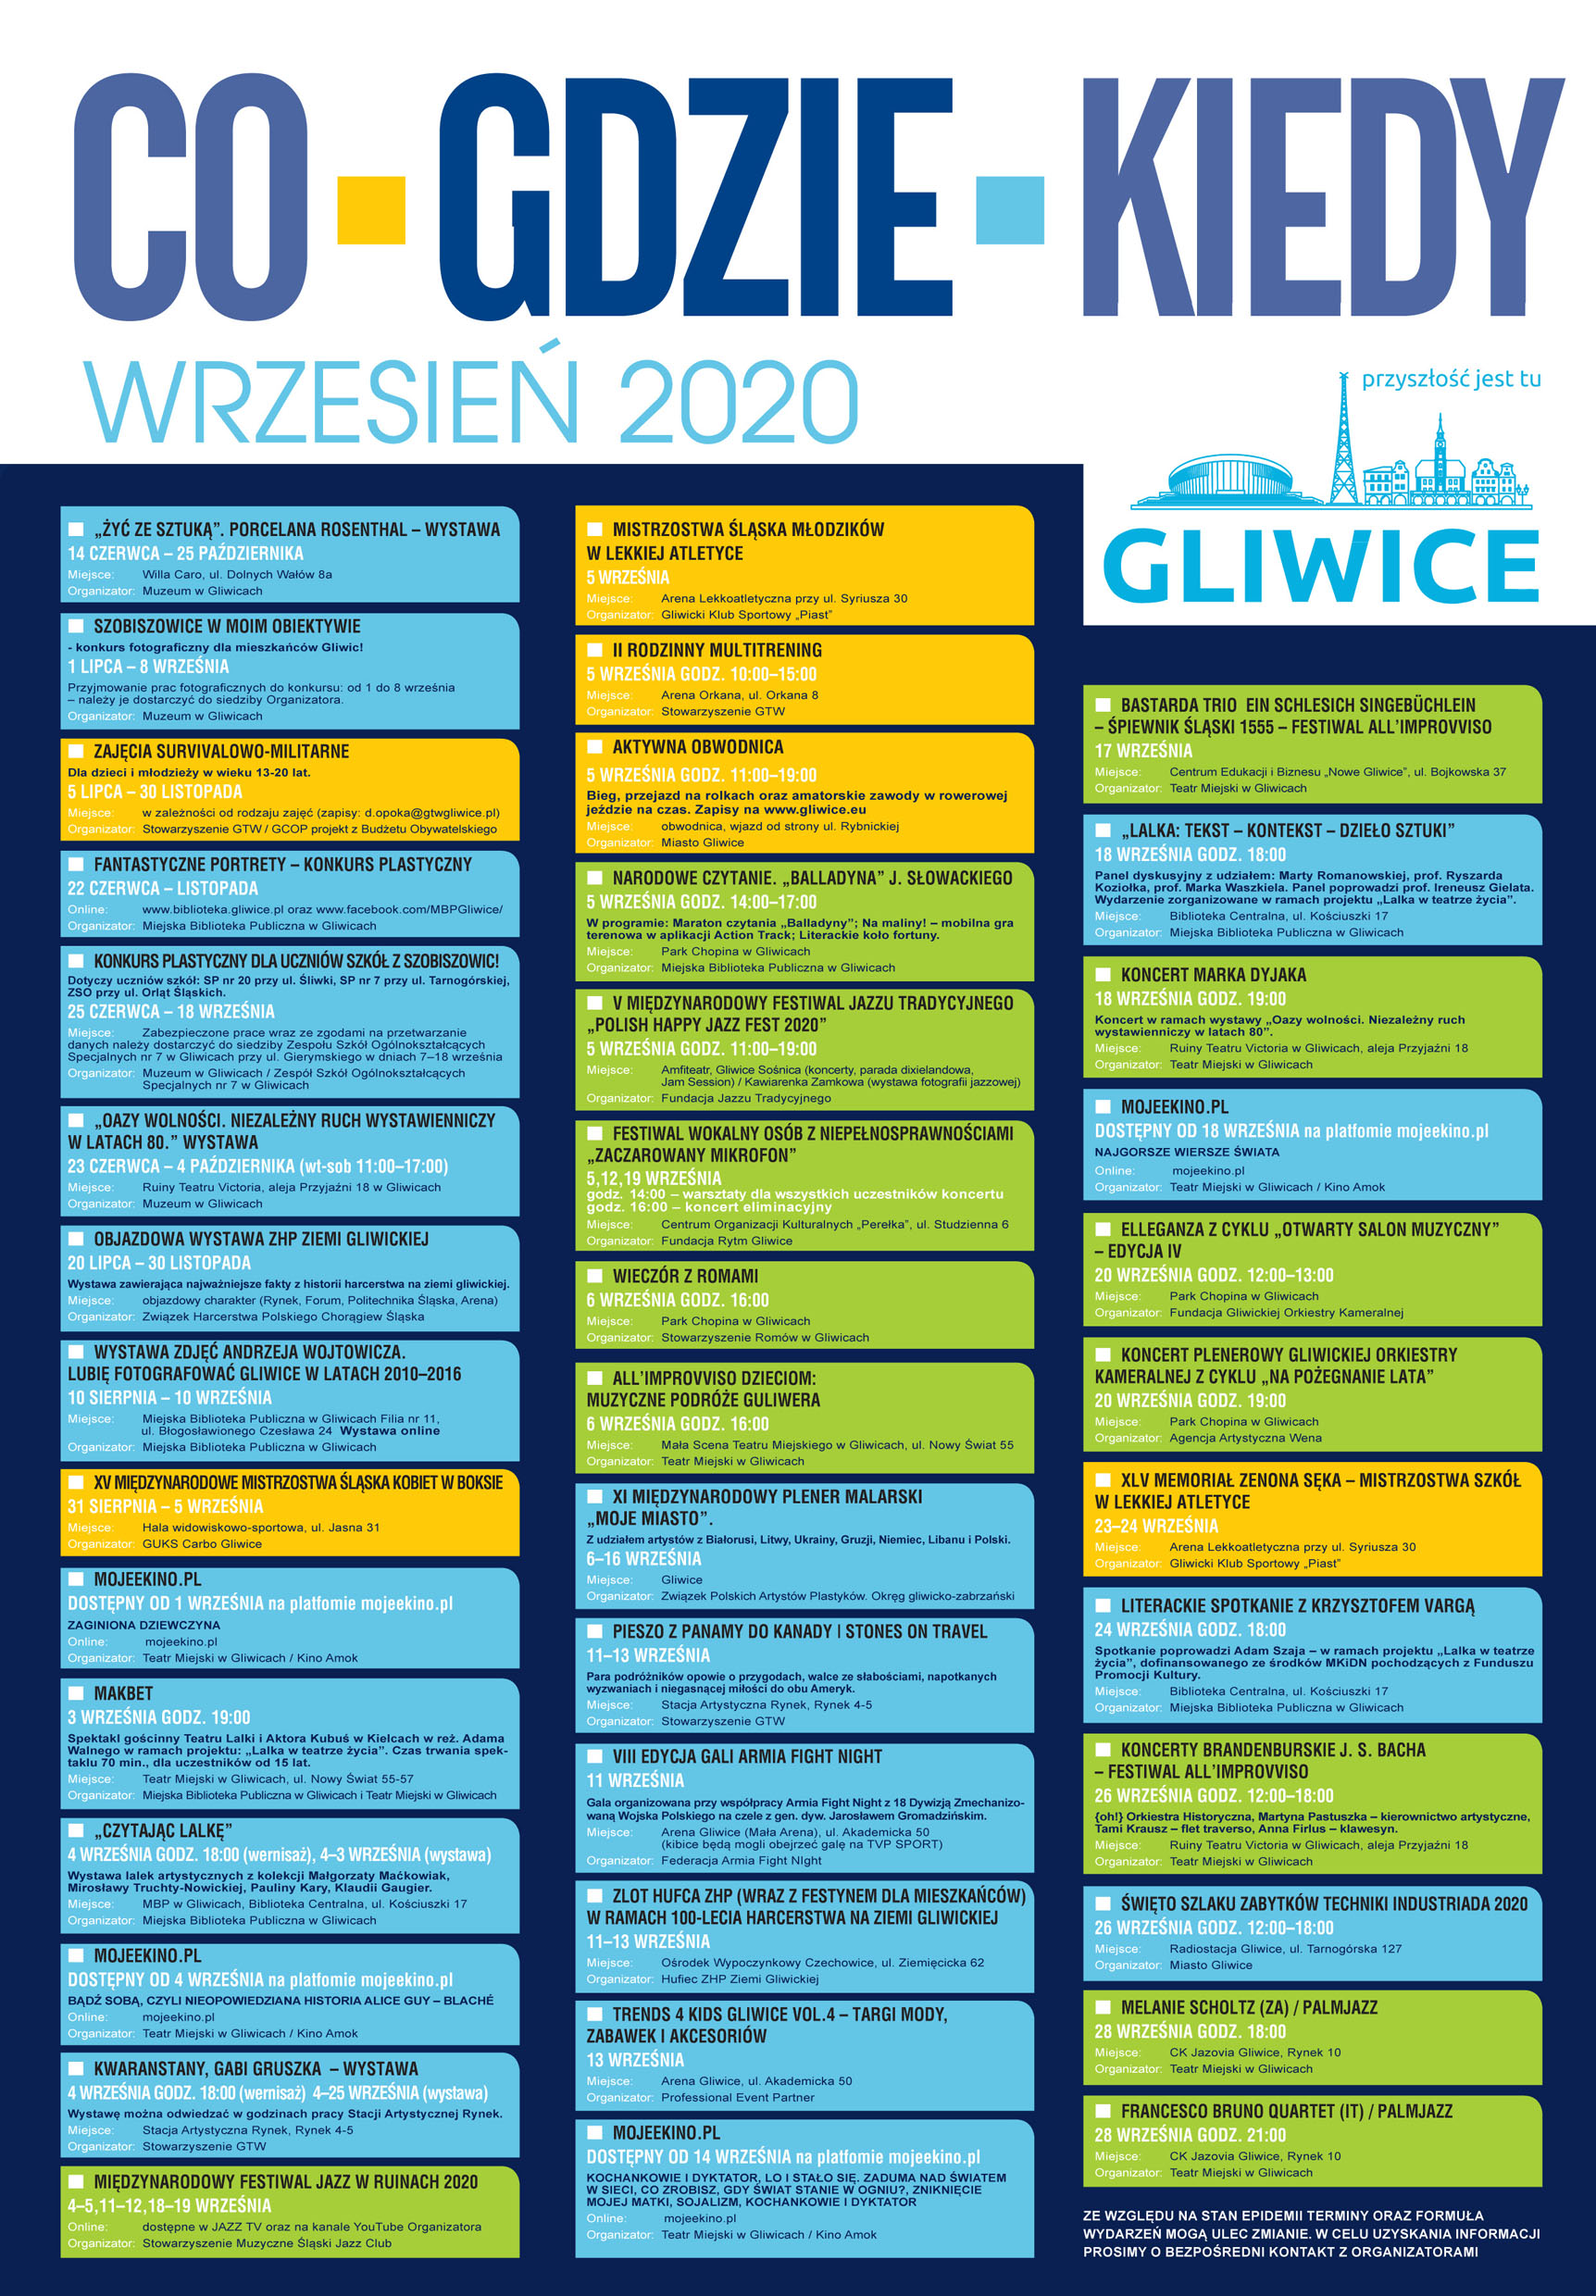 Wrzesień 2020 w Gliwicach